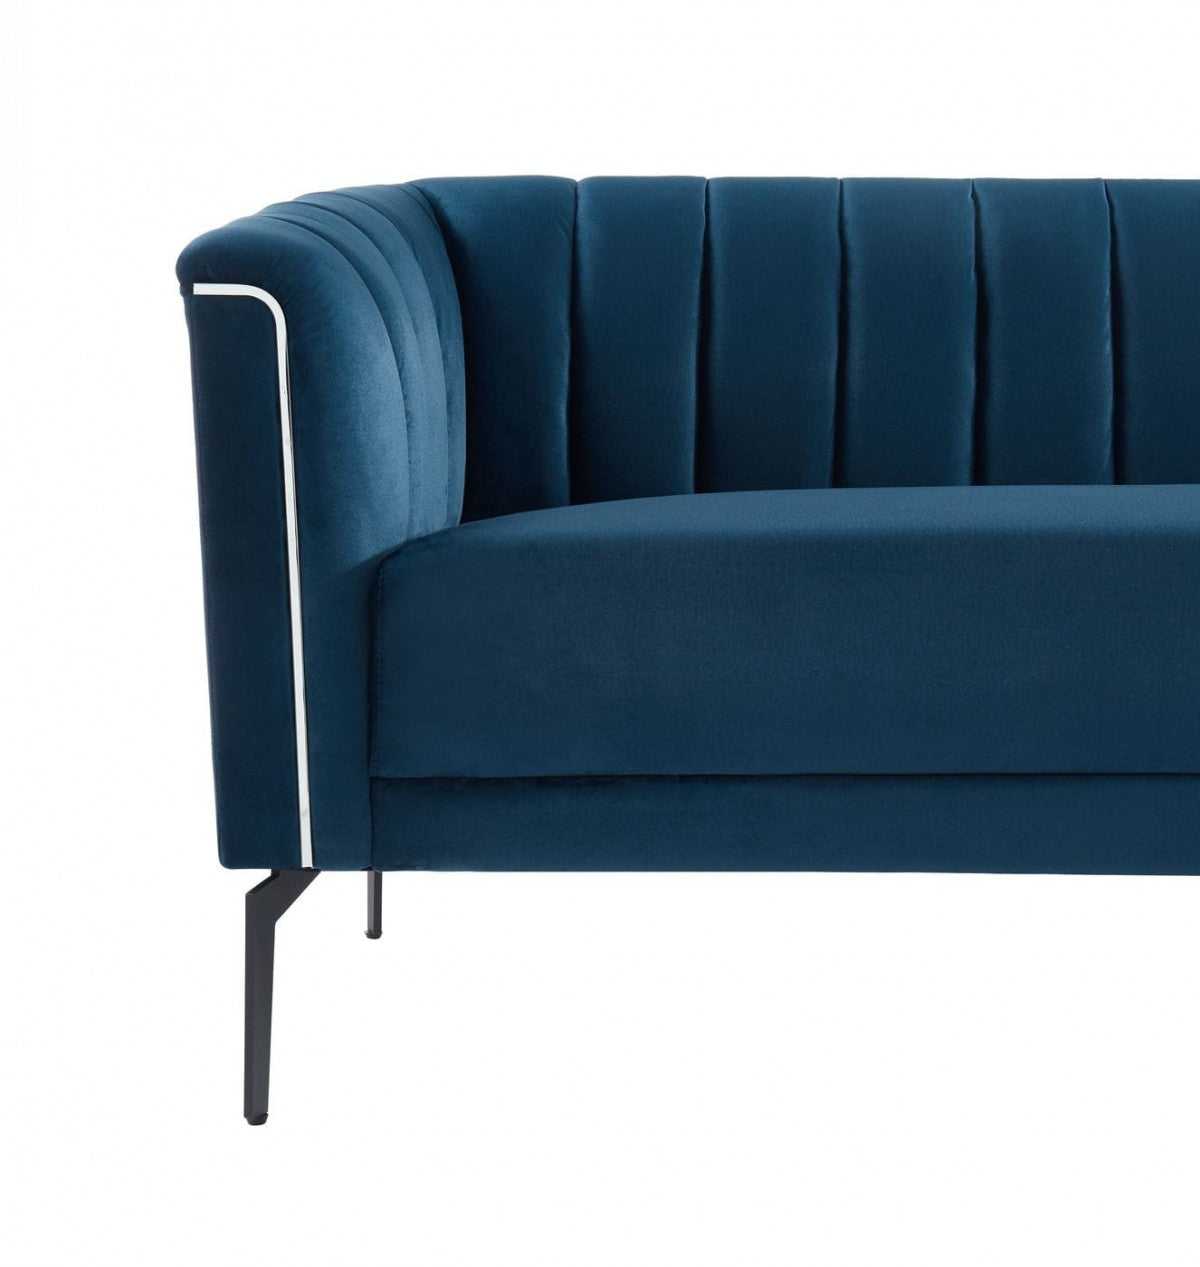 76" Blue Three Person Standard Metal Legs Sofa By Homeroots | Sofas | Modishstore - 6